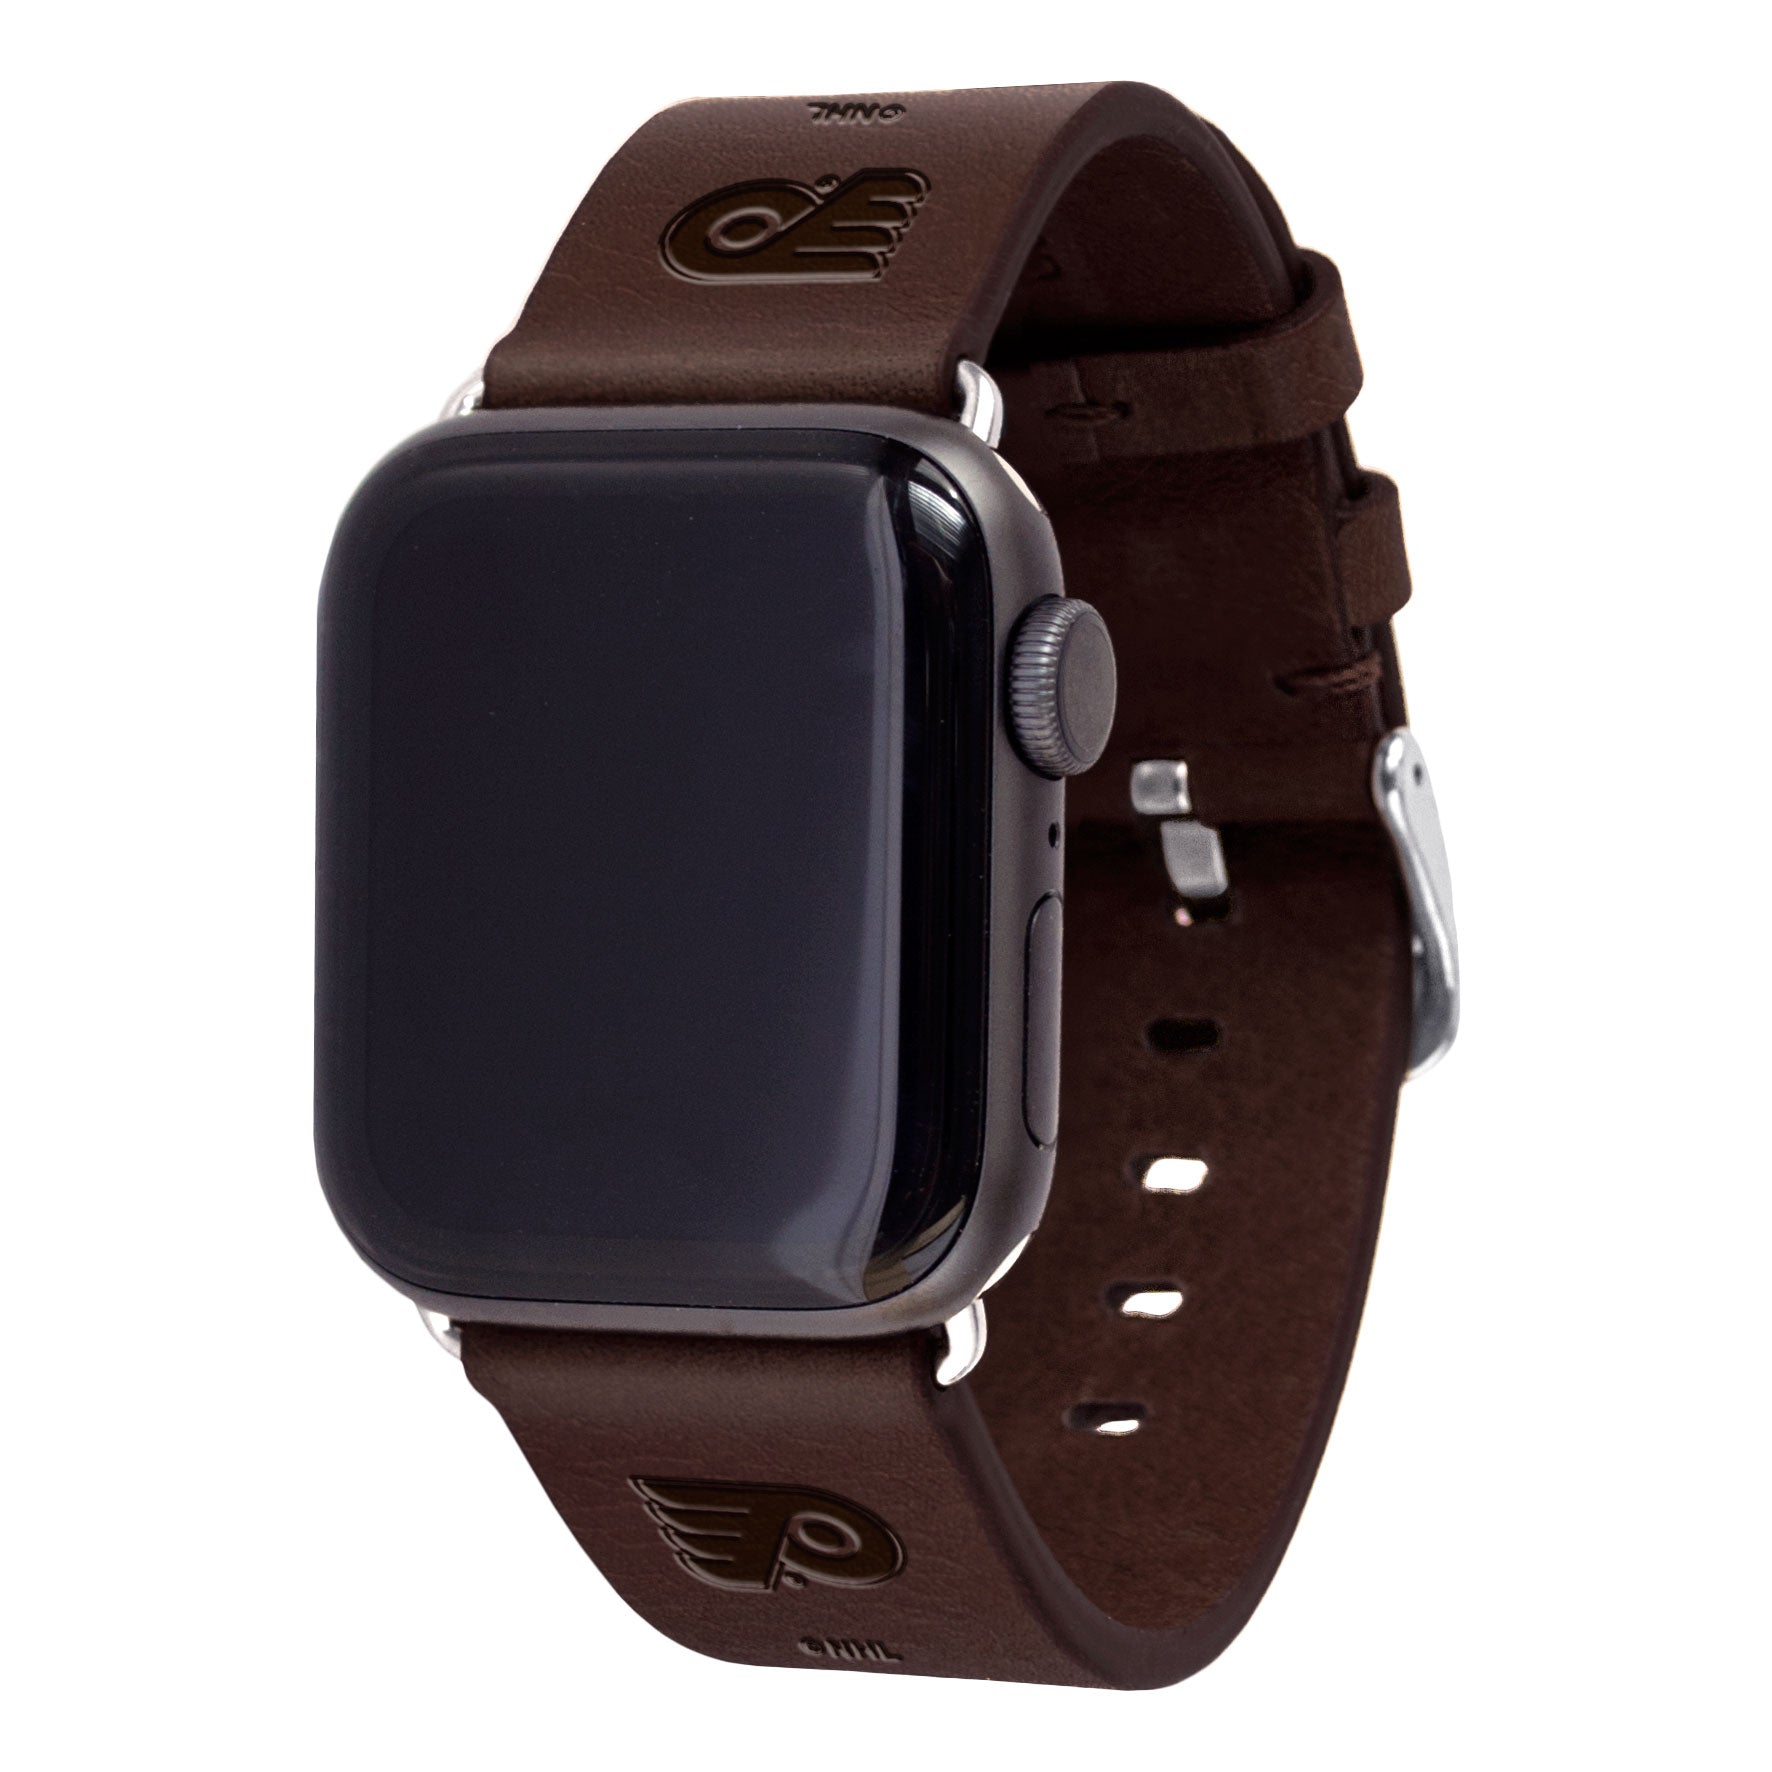 Philadelphia Flyers Leather Apple Watch Band - AffinityBands